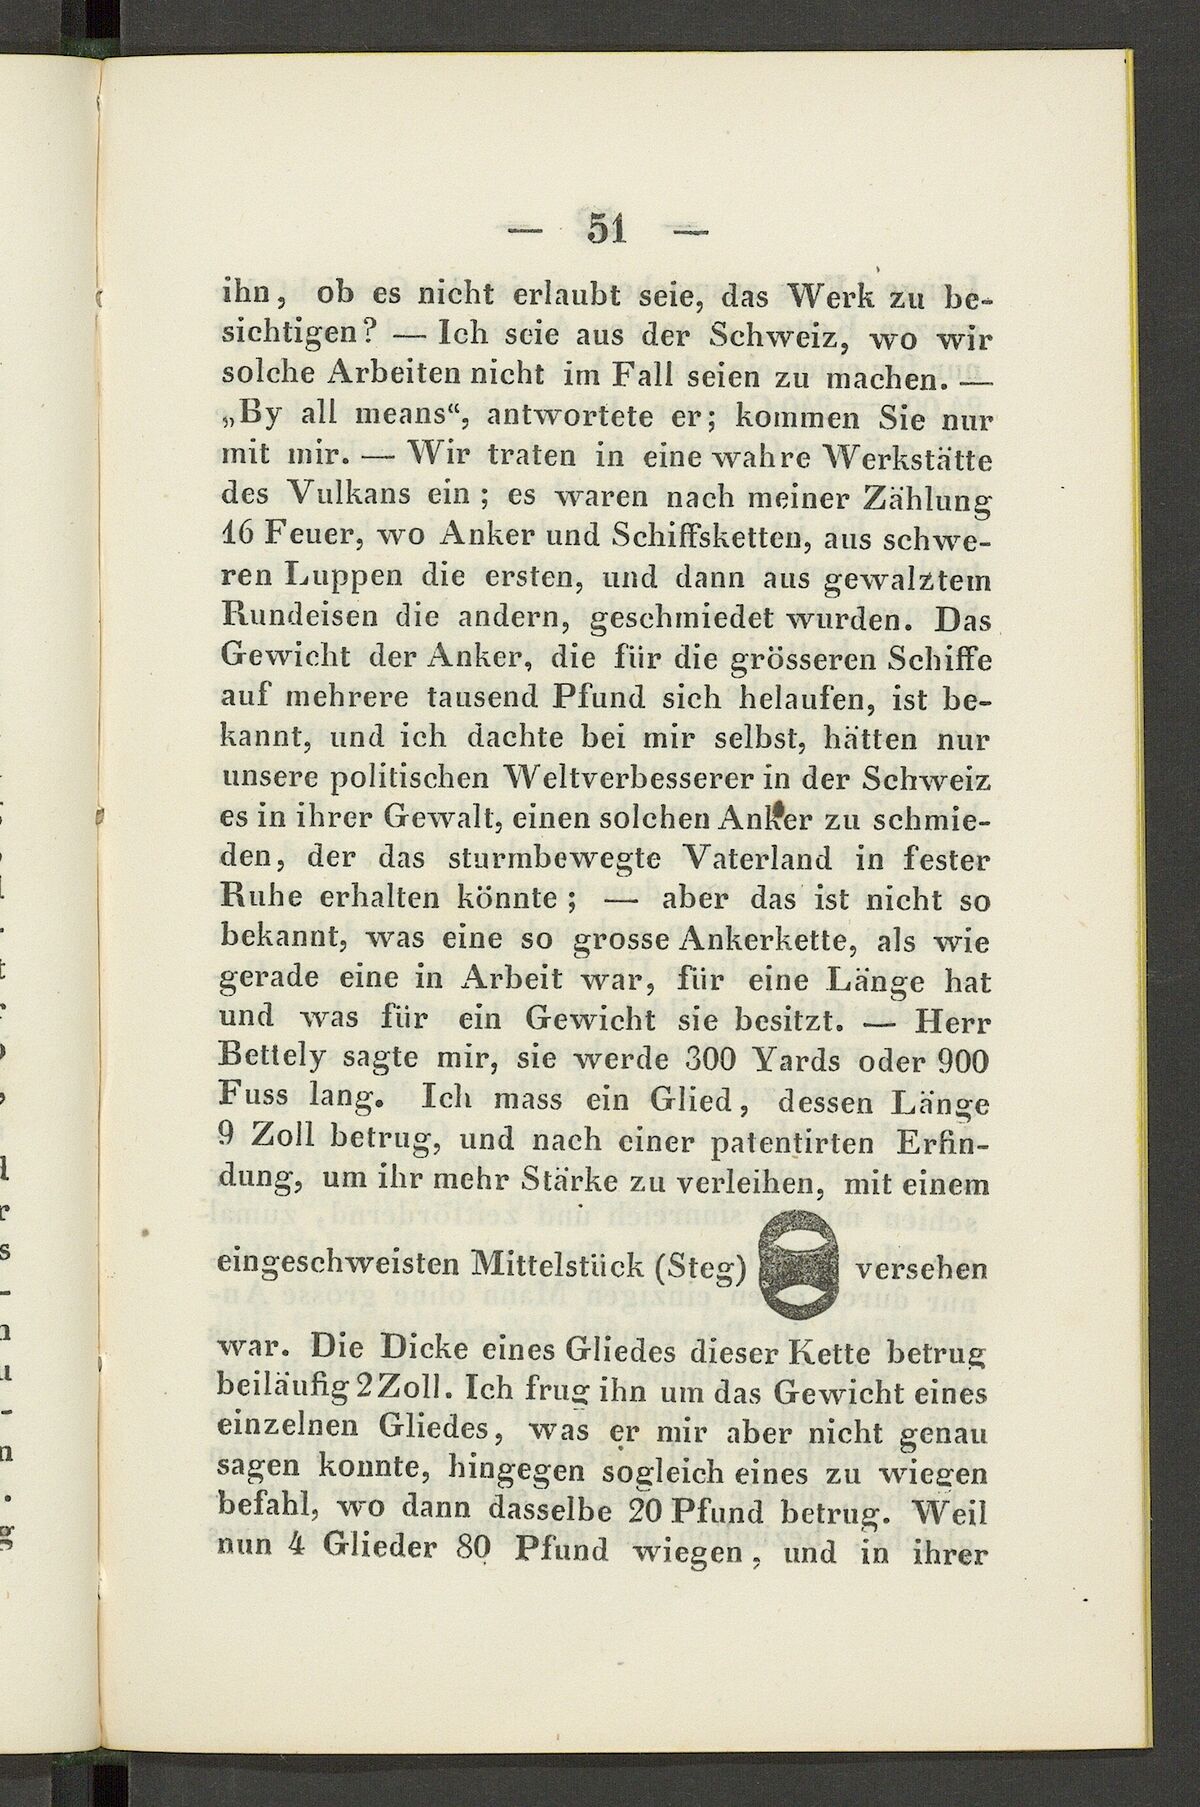 GFD 3/228: Skizze des Mittelstücks eines Kettenglieds (Fischers Reisetagebuch 1846, Seite 51)